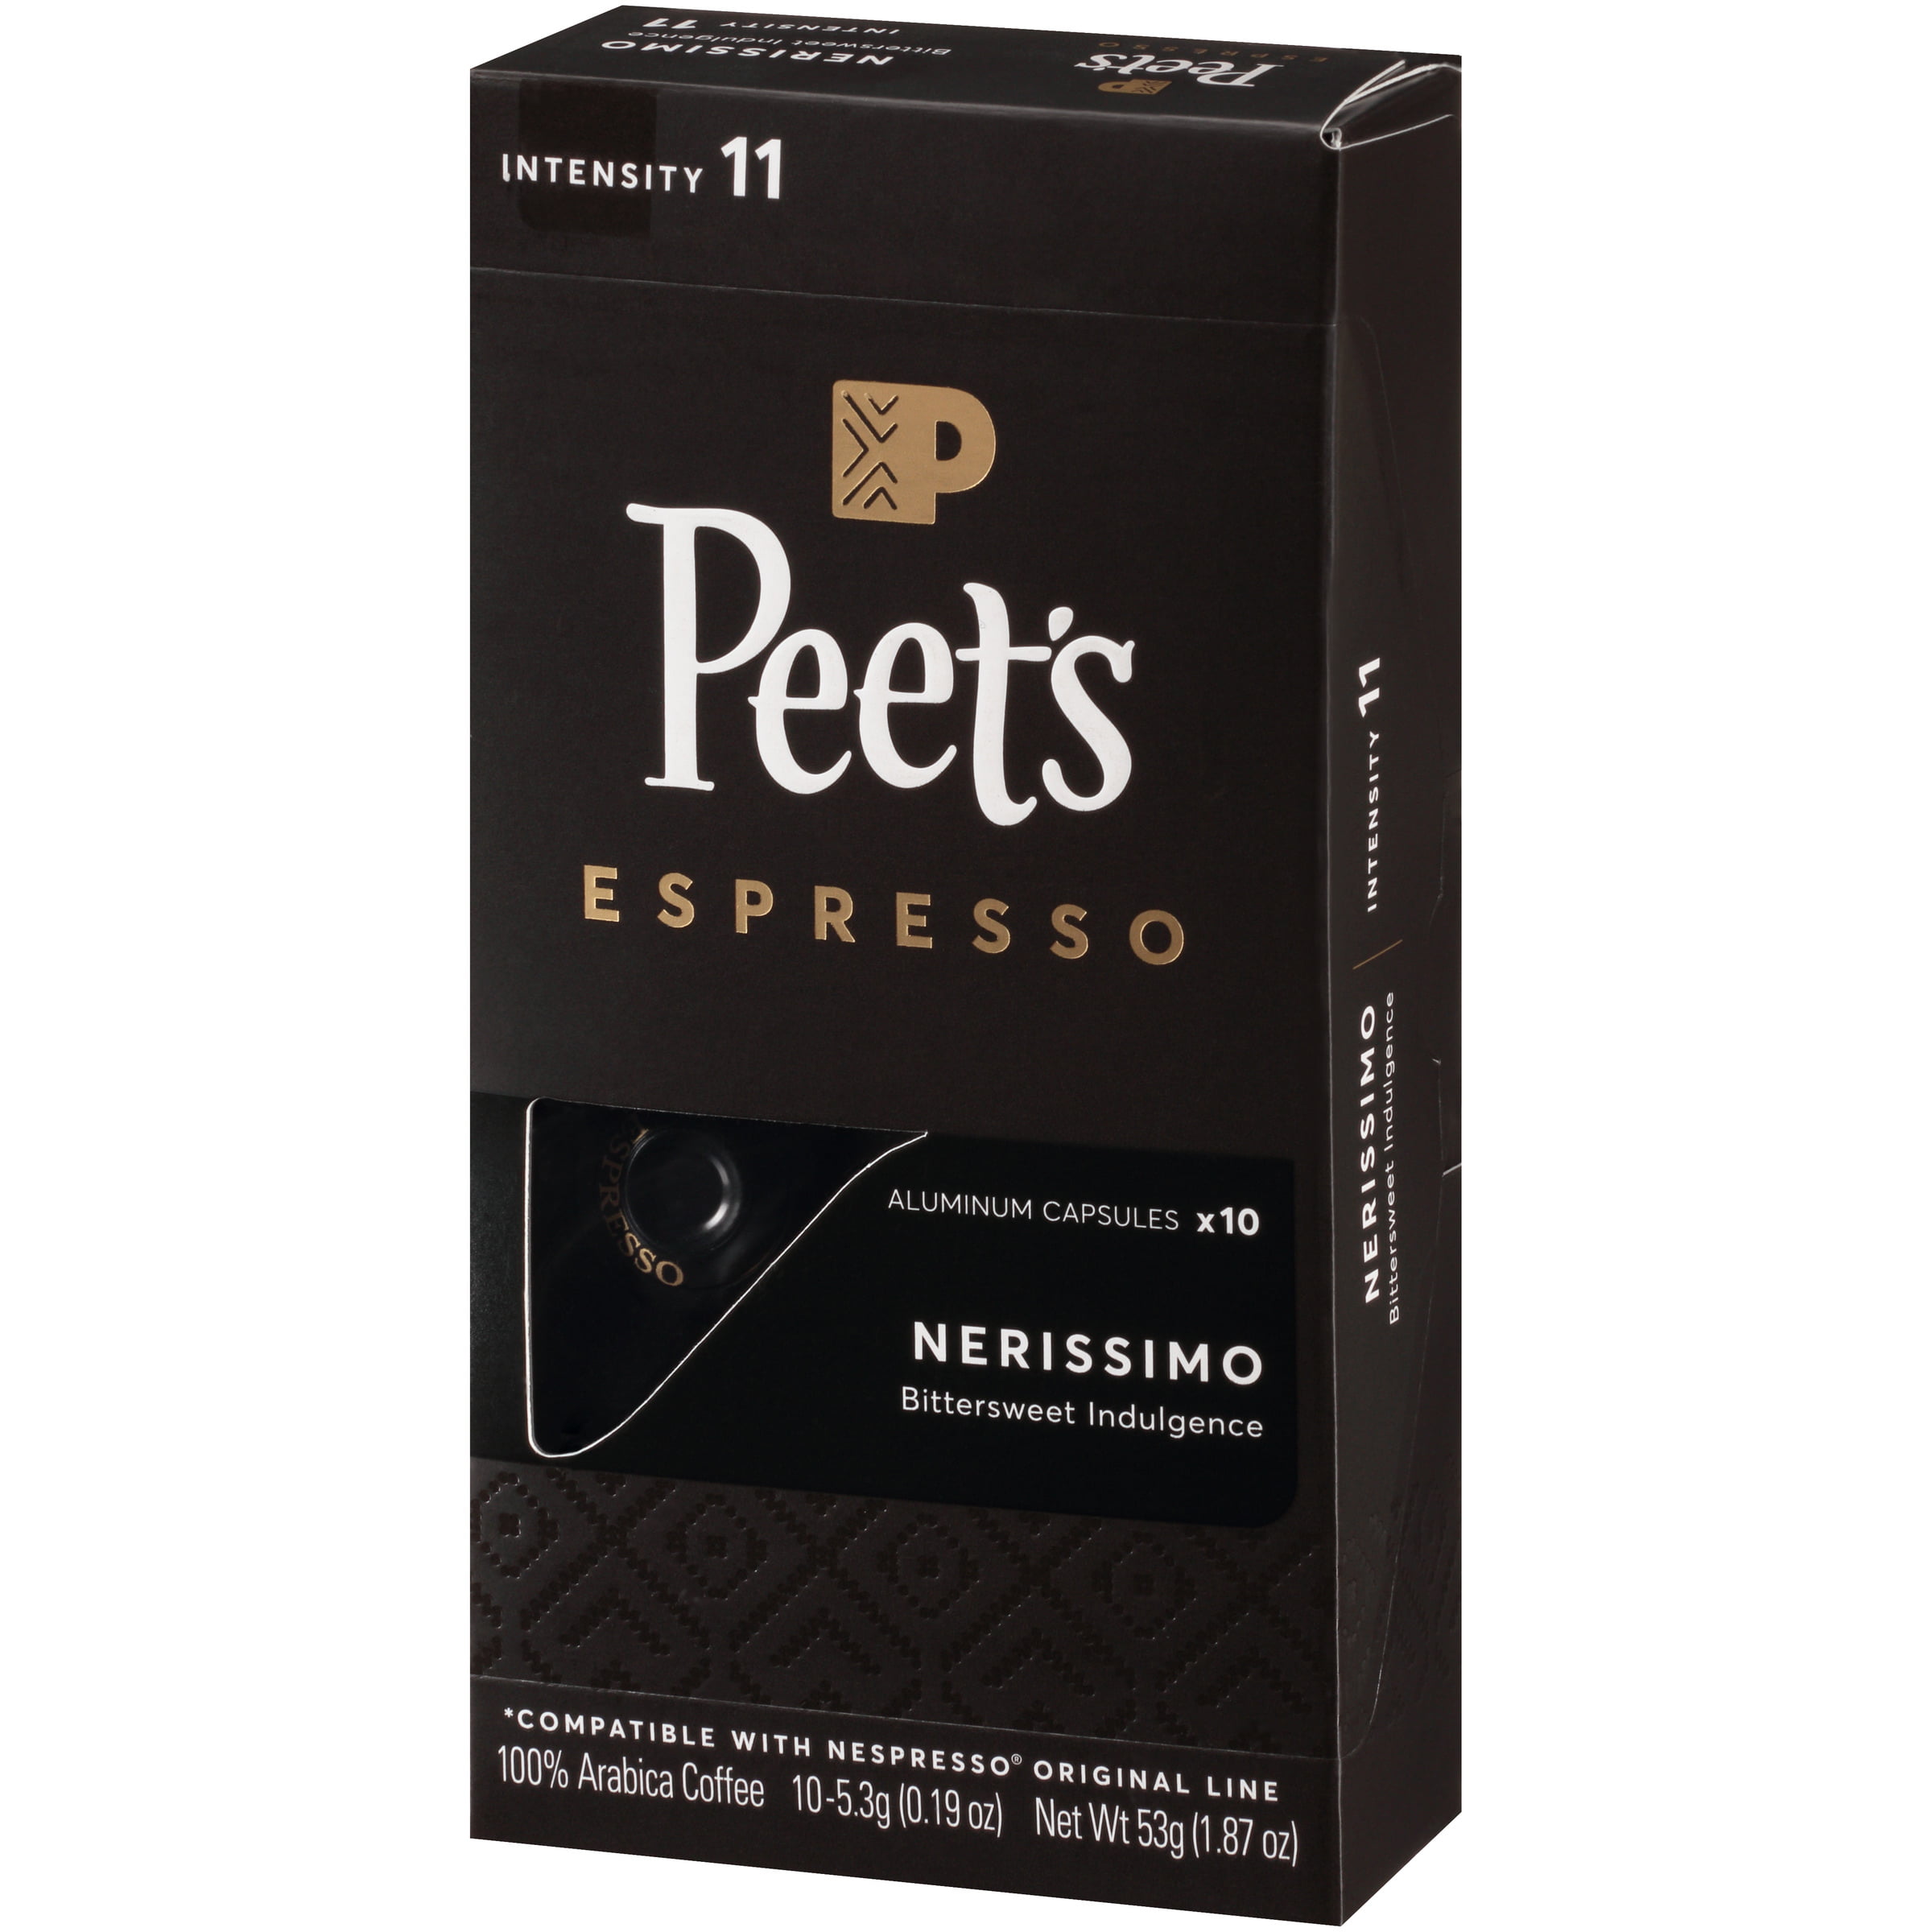 Photo 1 of 2pack--Peet's Espresso Nerissimo Dark Roast Aluminum Capsules - 20ct/1.87oz  exp 11.30.2021